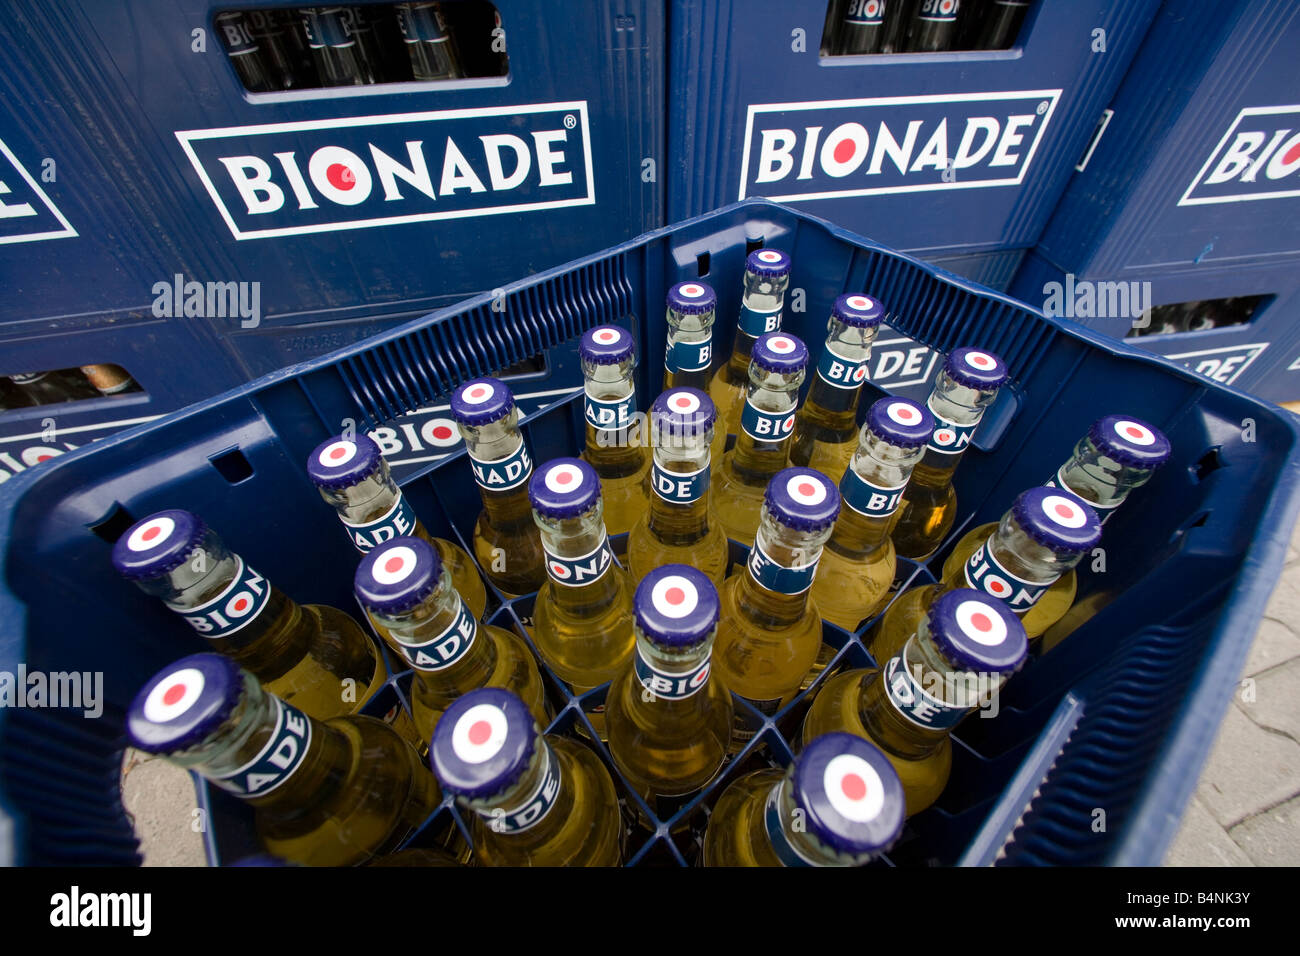 BIONADE GmbH la produzione dell'alcool biologico bevanda analcolica Bionade Foto Stock